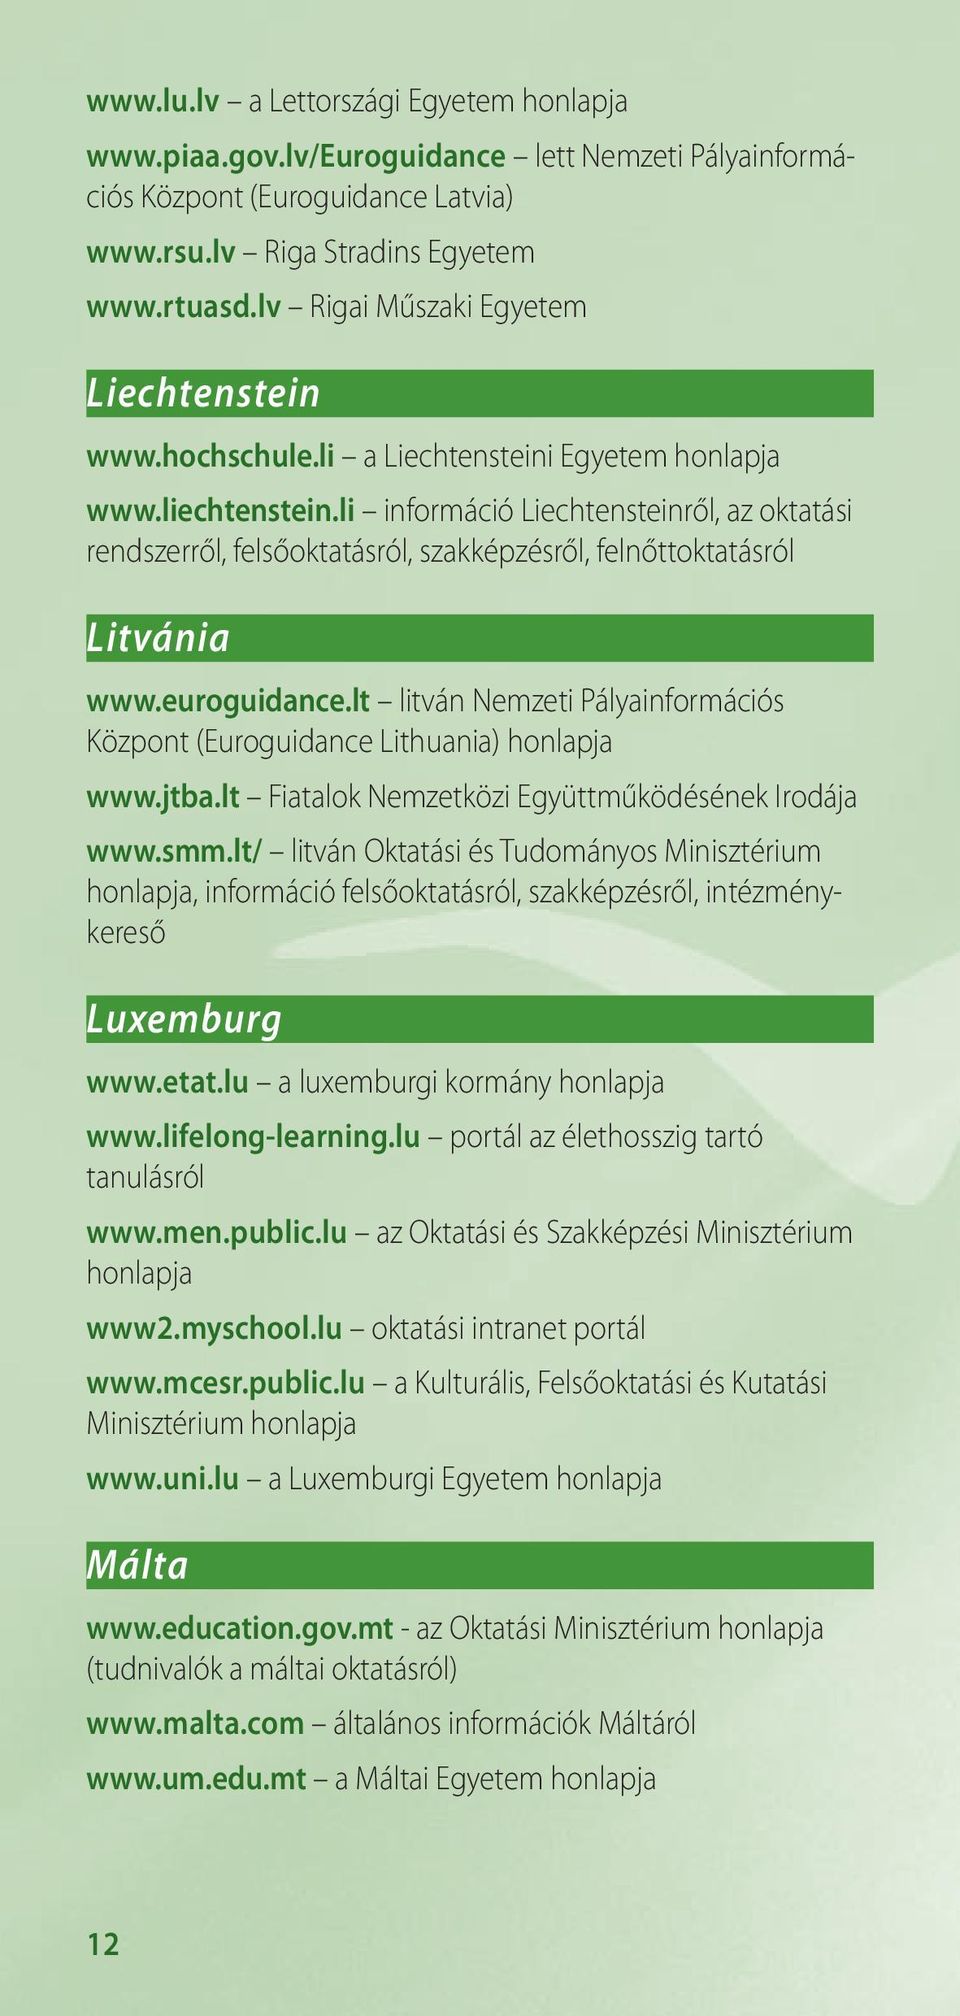 li információ Liechtensteinről, az oktatási rendszerről, felsőoktatásról, szakképzésről, felnőttoktatásról Litvánia www.euroguidance.